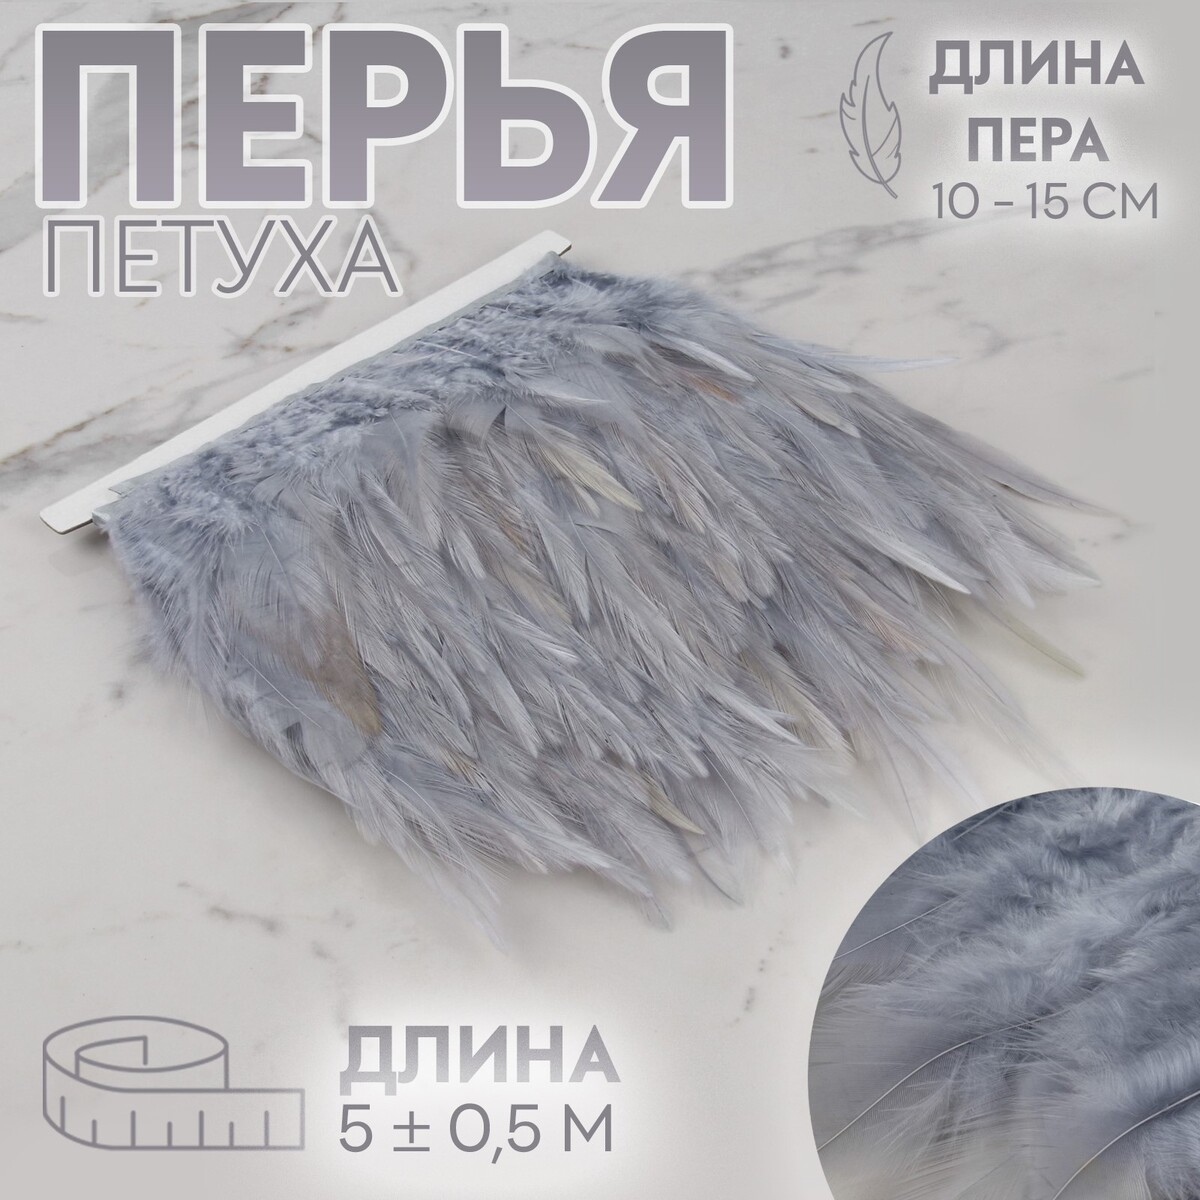 Тесьма с перьями петуха, 10-15 см, 5 ± 0,5 м, цвет серый тесьма с перьями индюка 13 17 см 5 ± 0 5 м сливочный